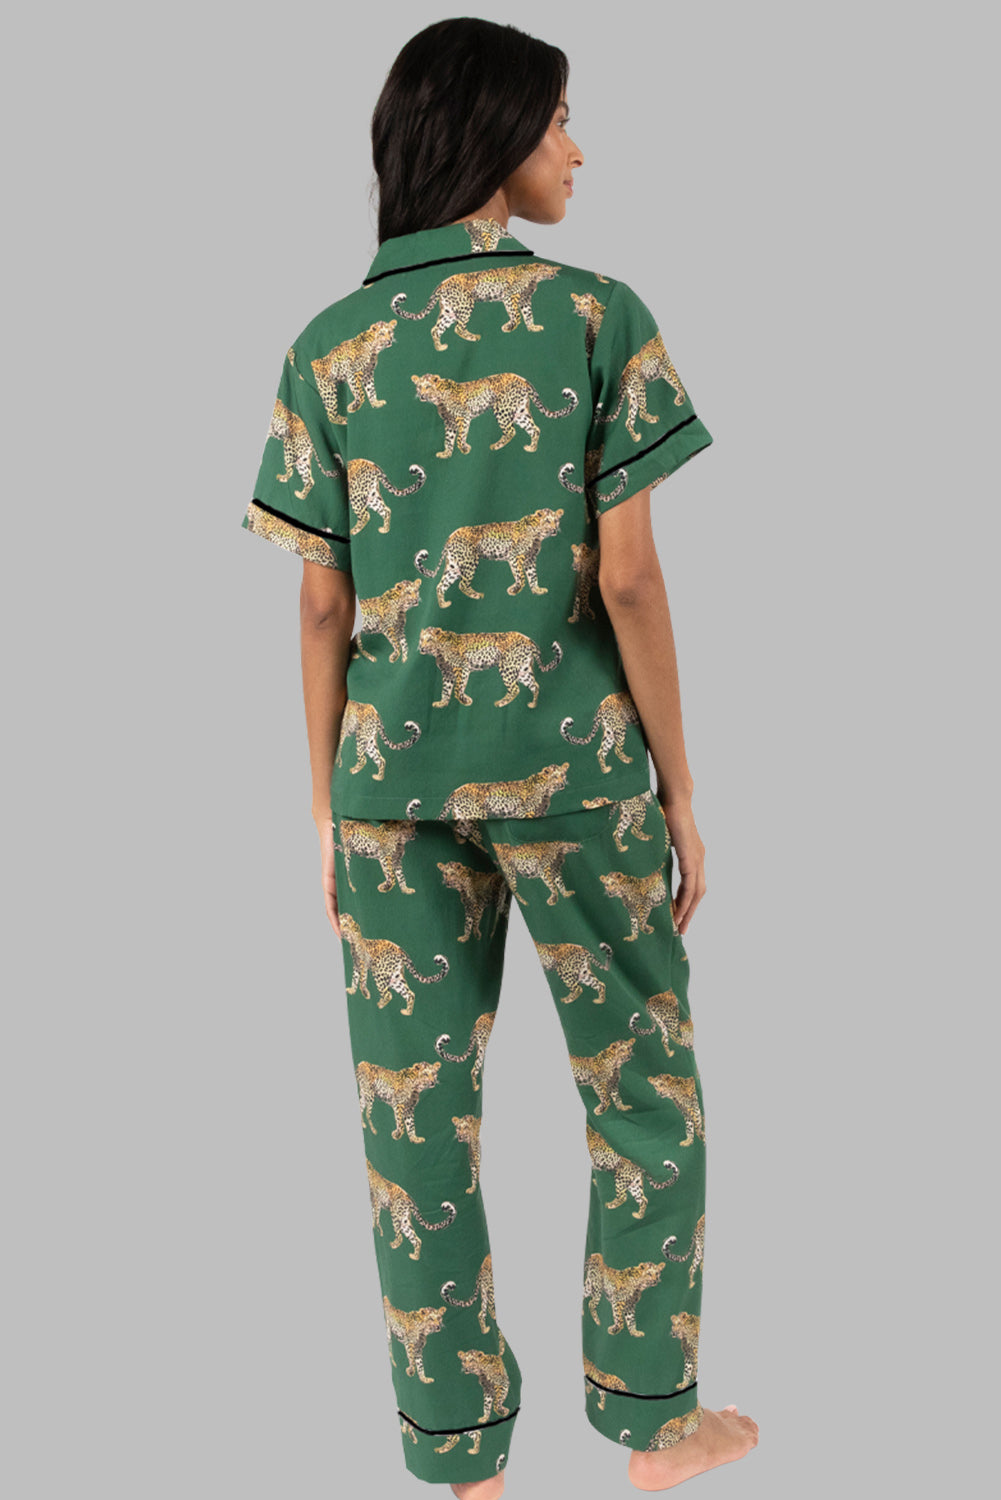 Komplet majice s kratkimi rokavi in ​​hlačami iz zelenega geparda